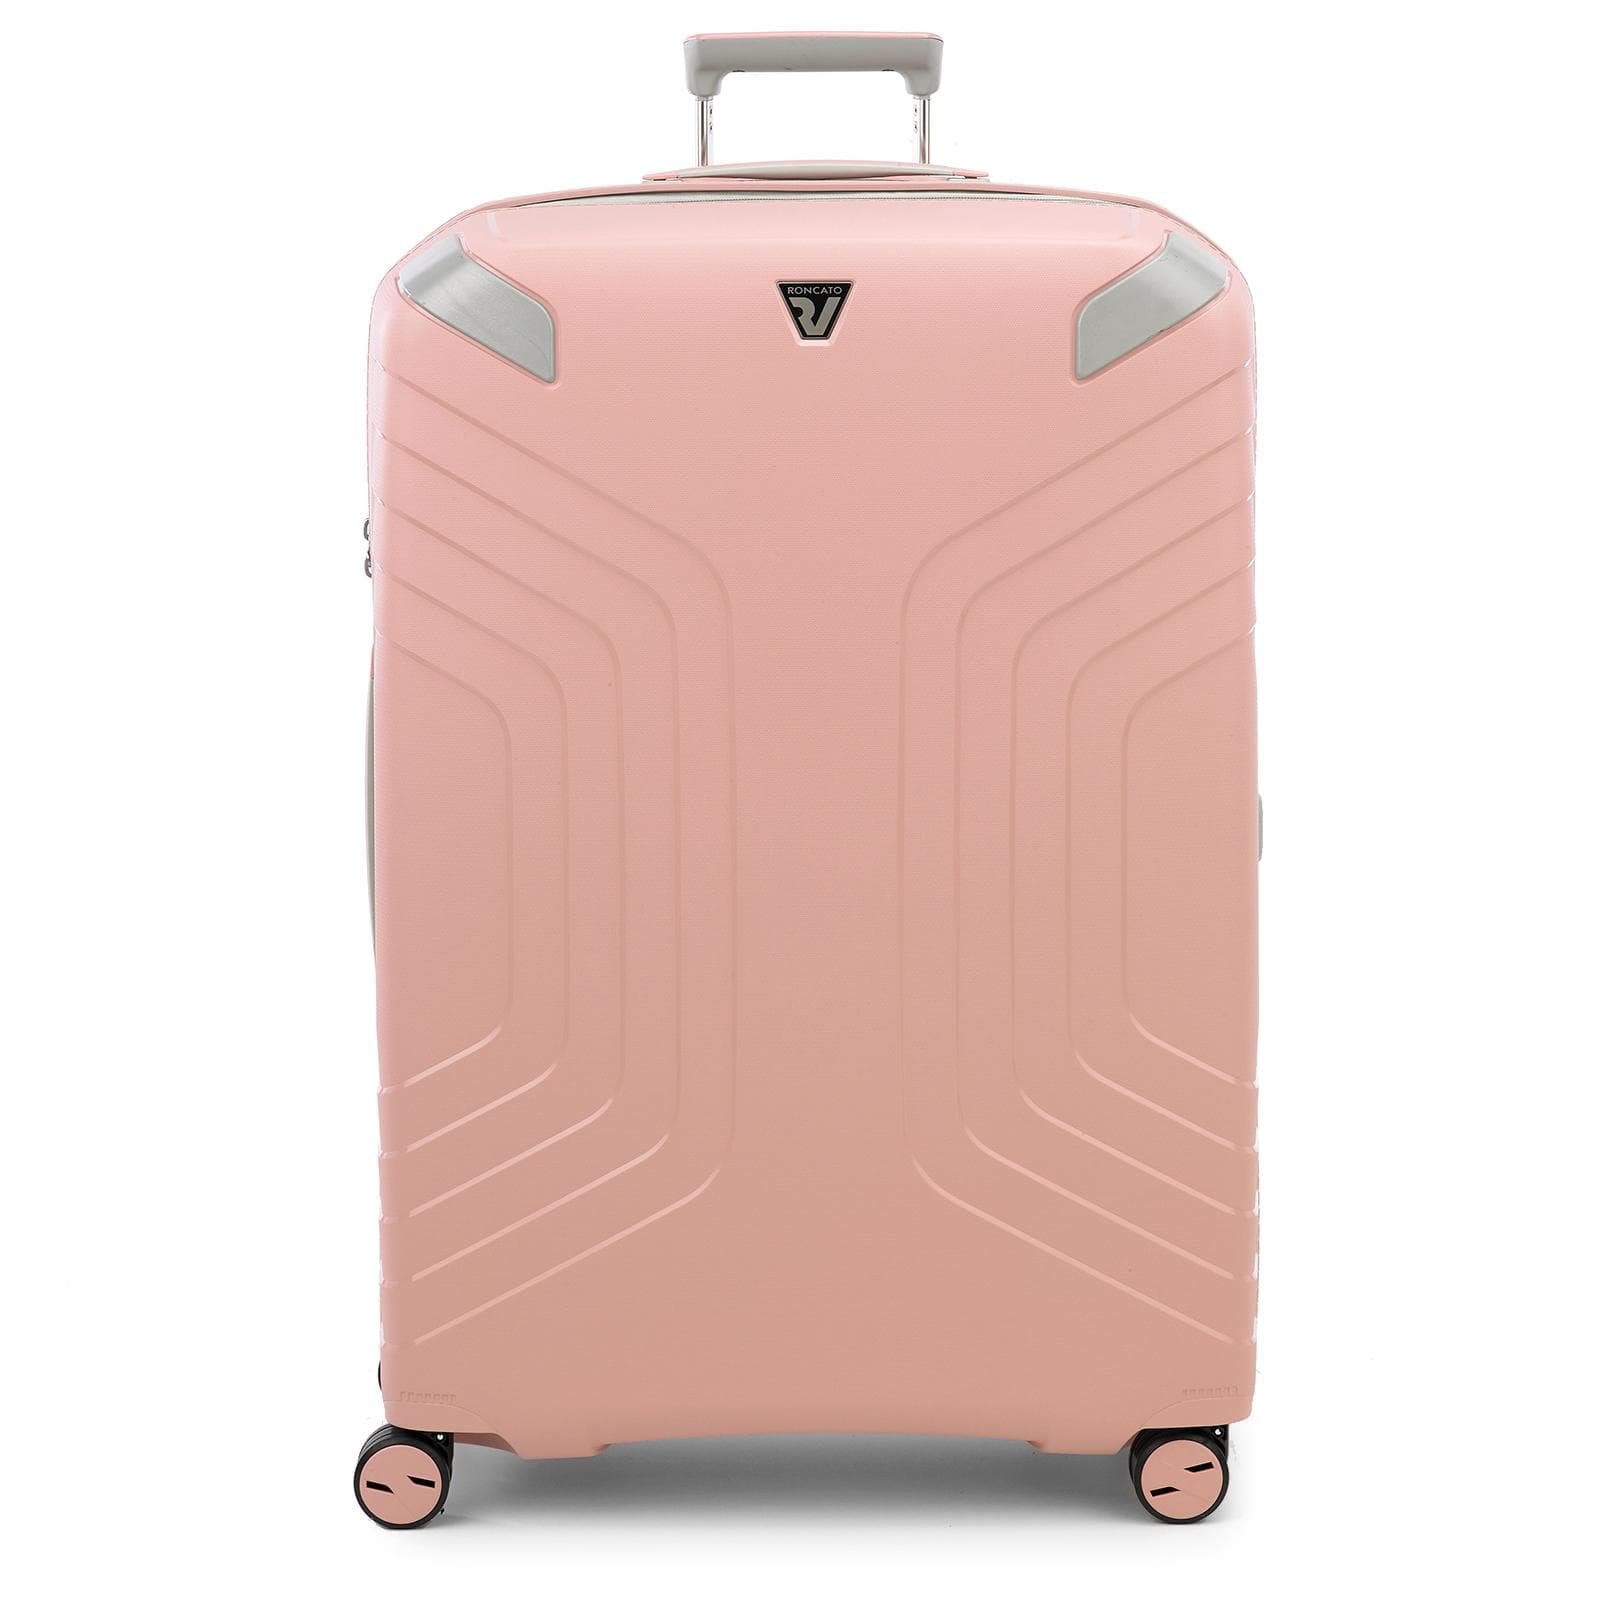 ¡Consigue una maleta de viaje totalmente personalizada!